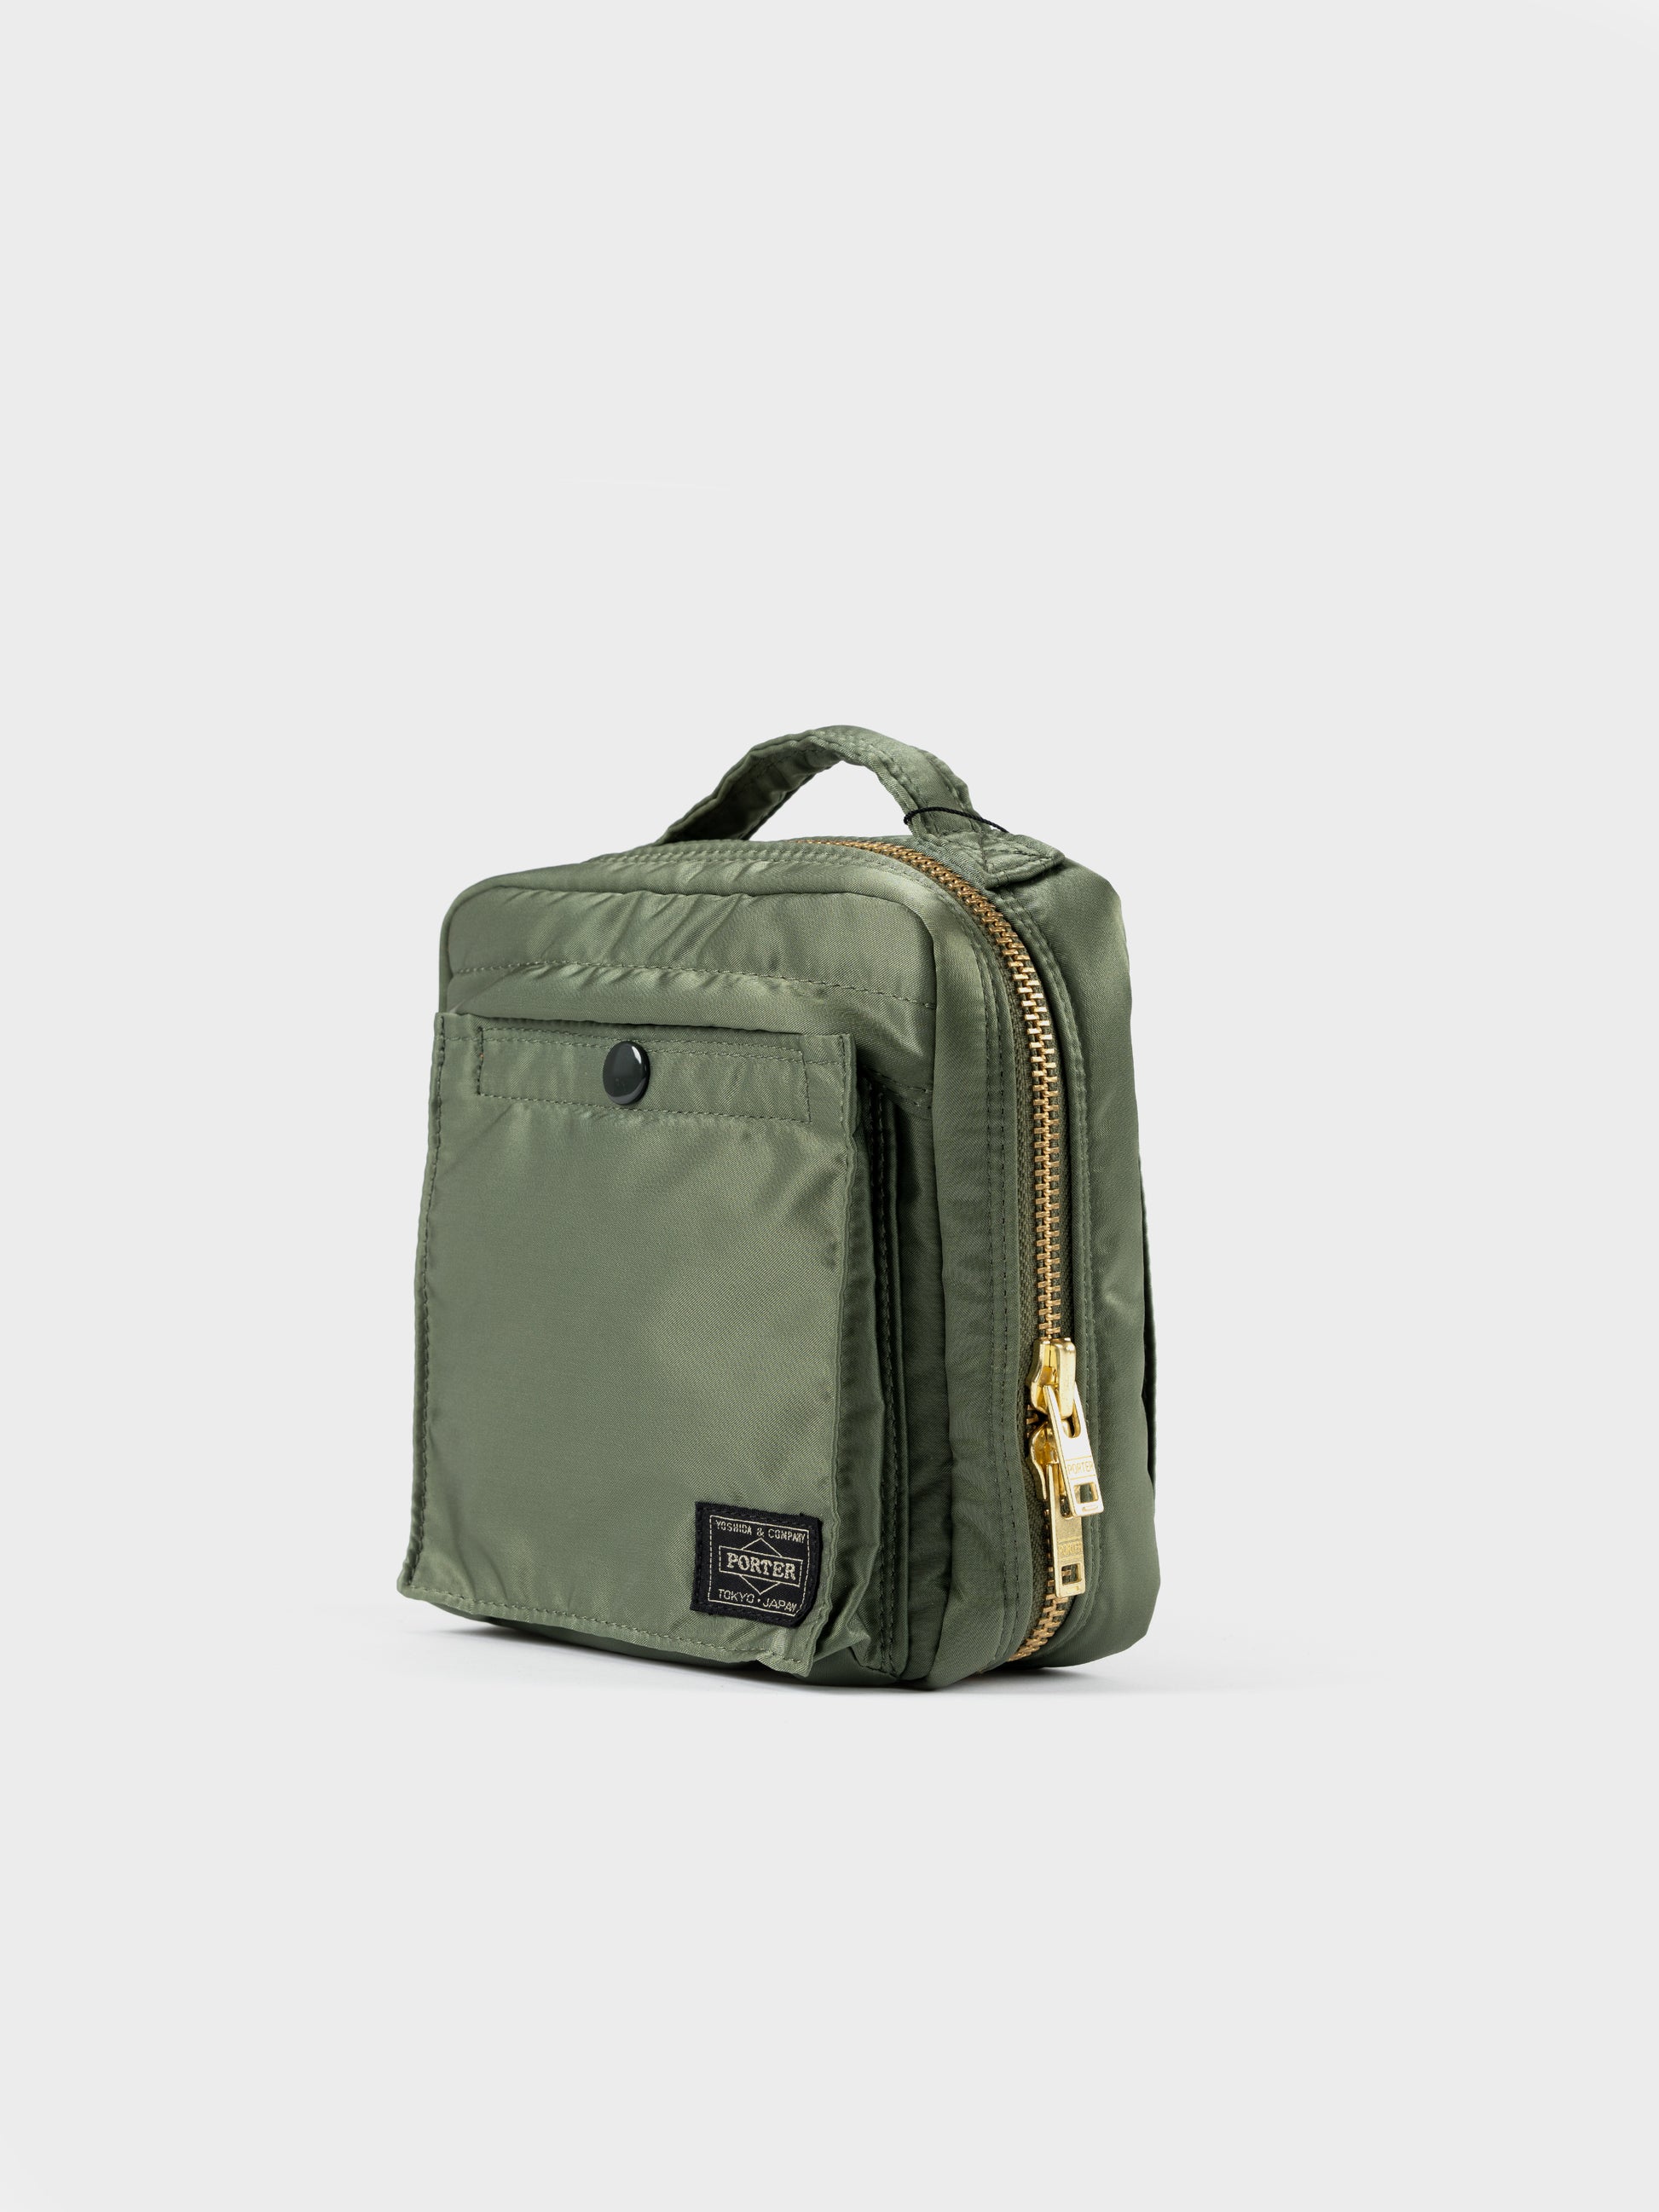 Porter-Yoshida & Co Tanker Square Shoulder Bag - Sage Green